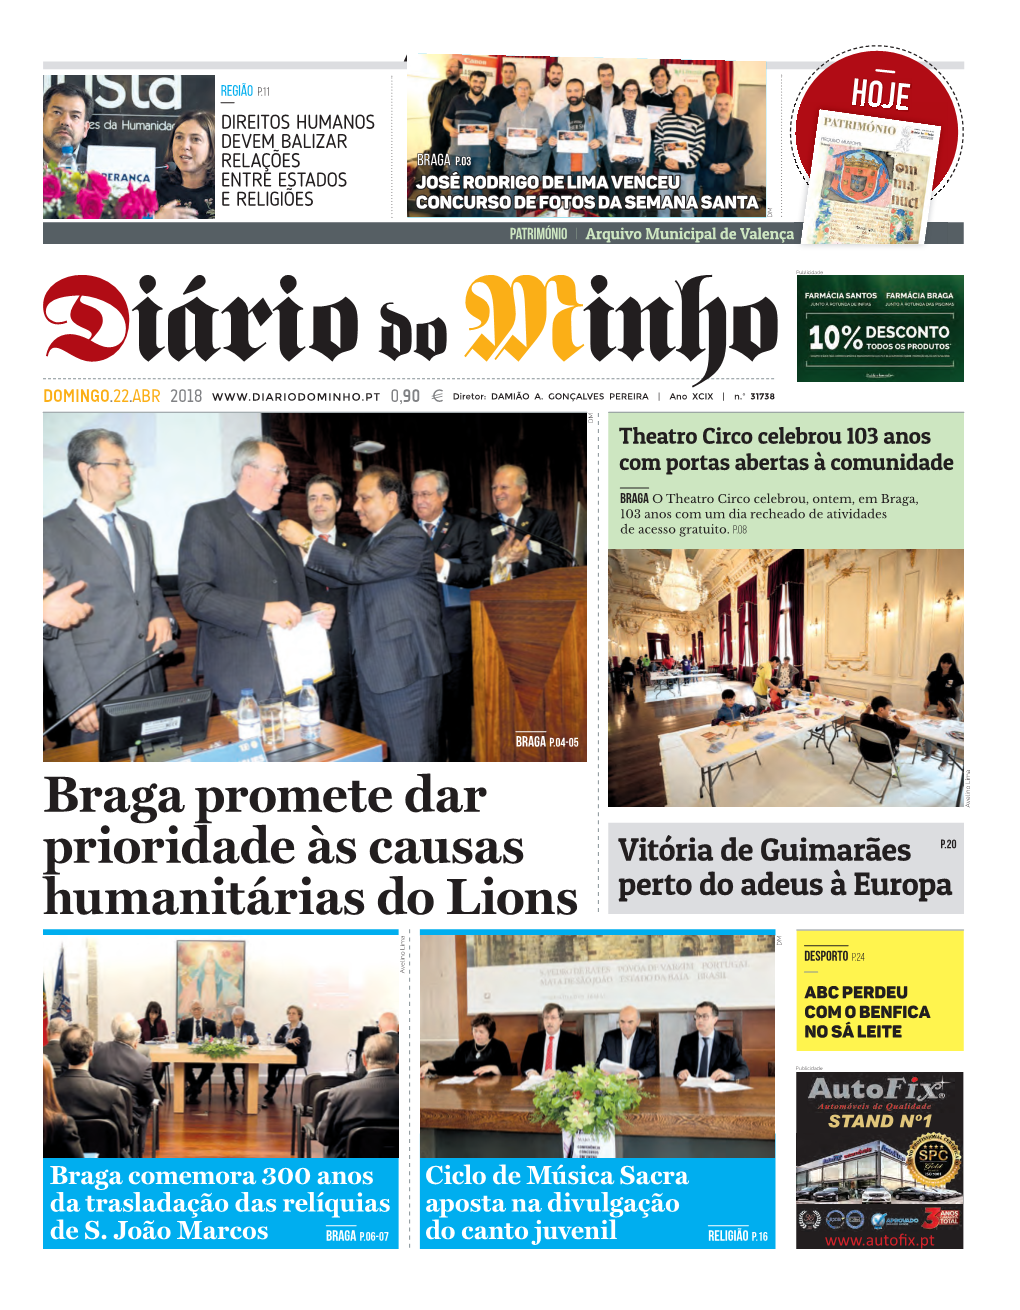 Braga Promete Dar Prioridade Às Causas Humanitárias Do Lions